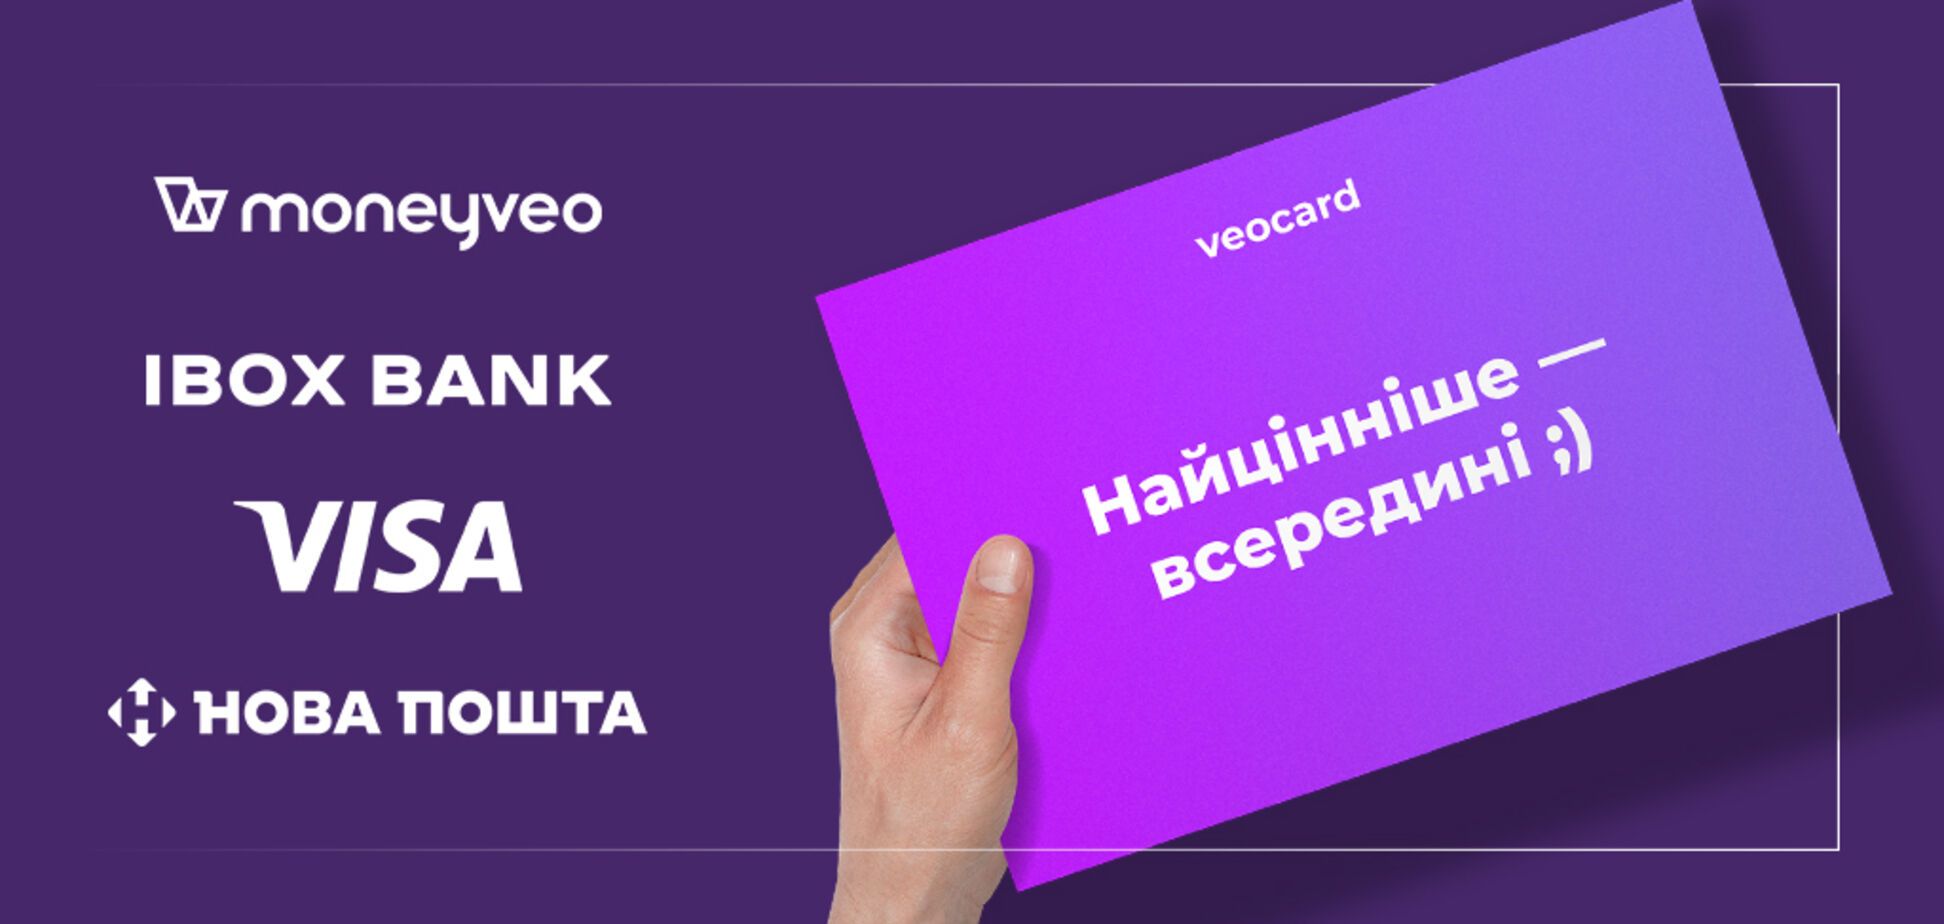 Moneyveo випустить платіжну карту Veocard за підтримки IBOX BANK